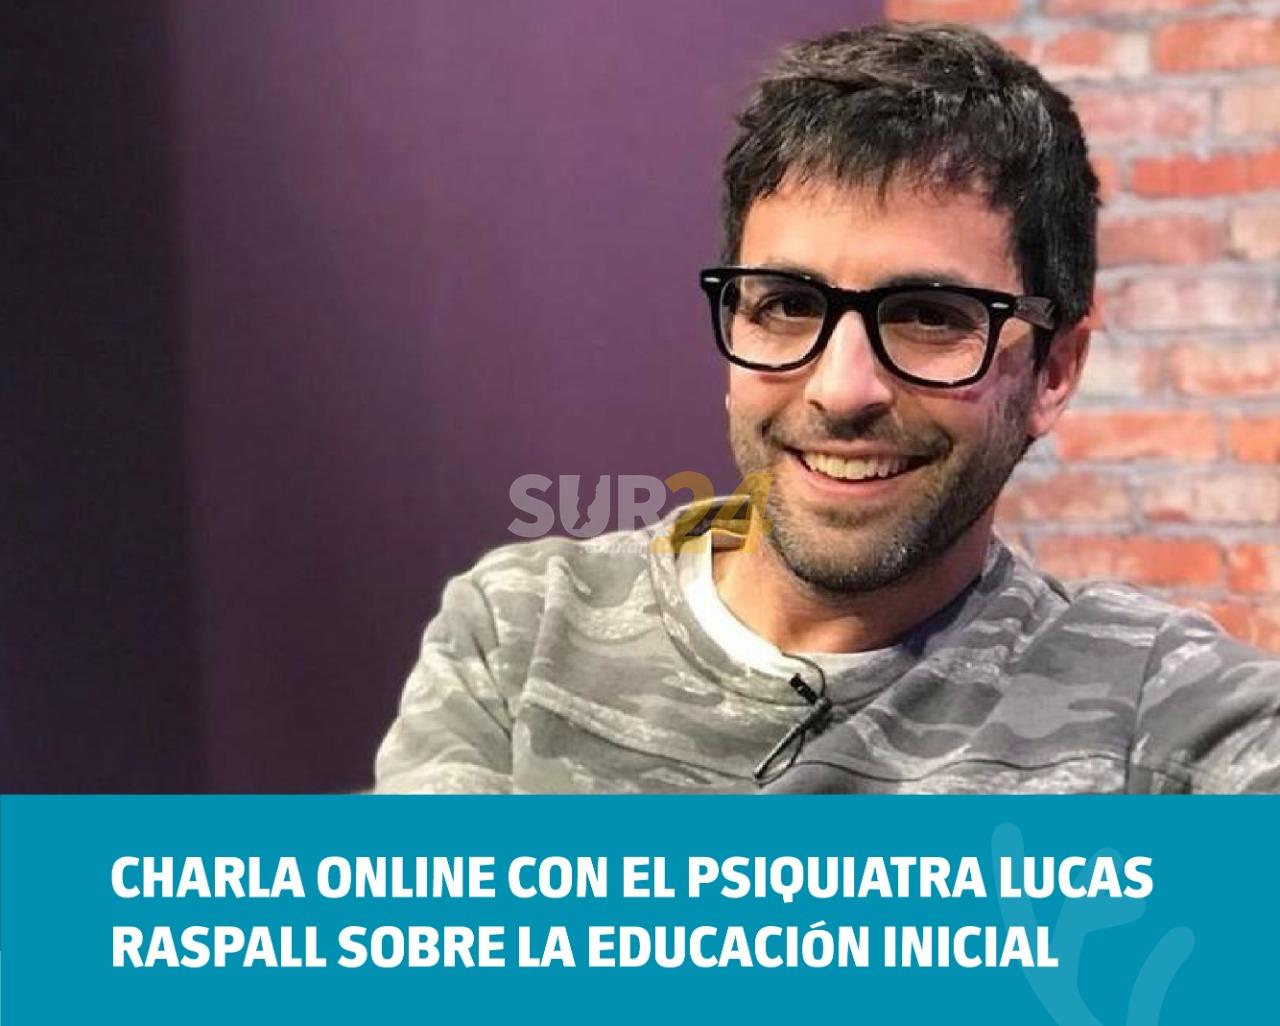 Charla online con el psiquiatra Lucas Raspall sobre la educación inicial